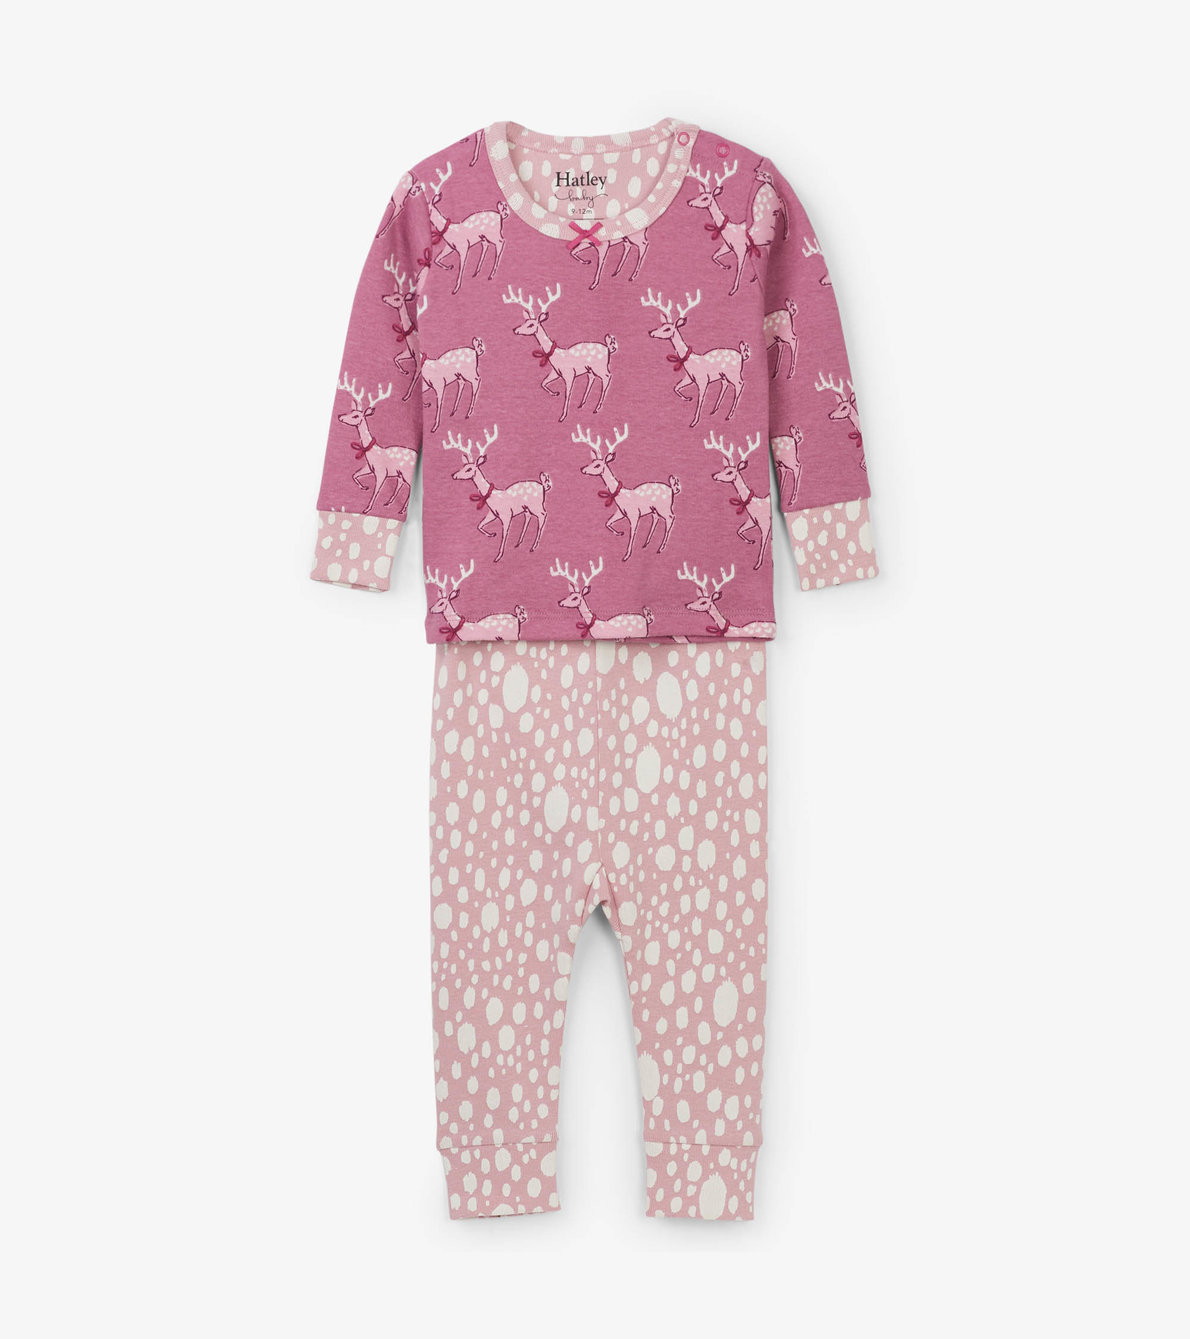 View larger image of Darling Deer Organic Cotton Baby Pajama Set